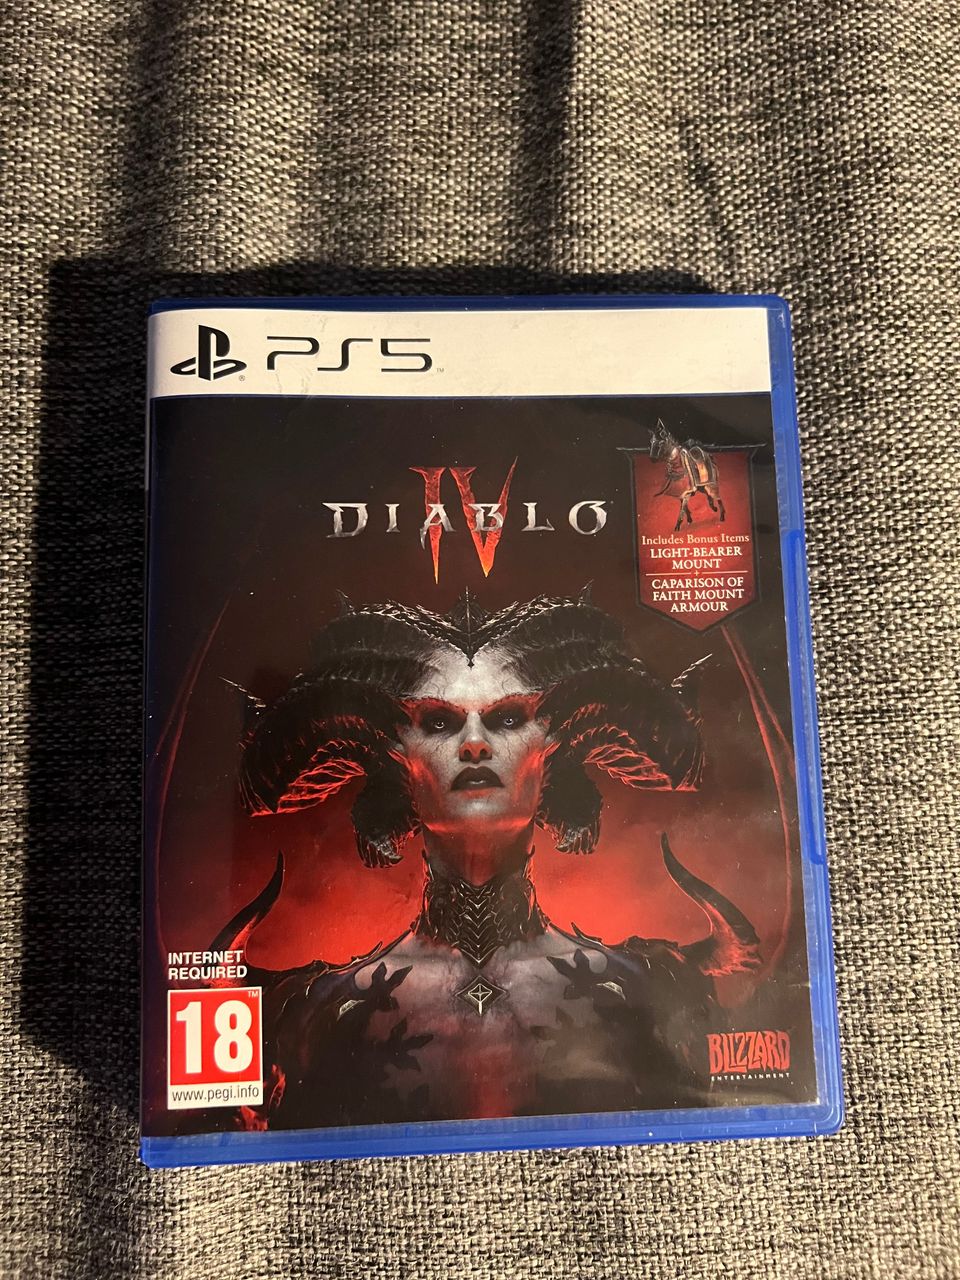 Diablo IV ps5